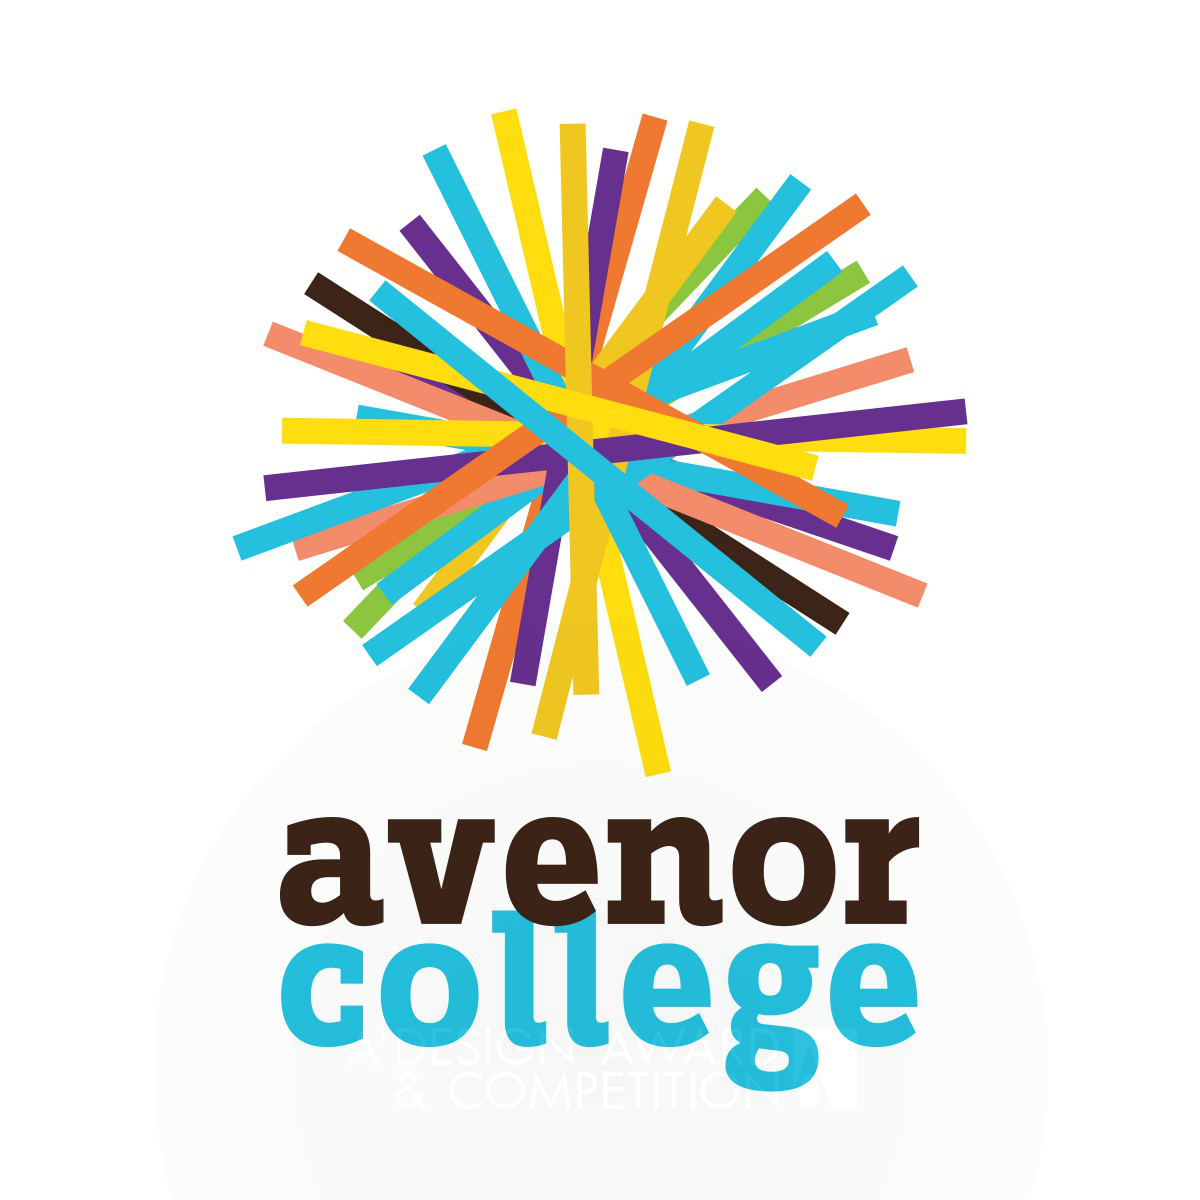 Avenor College <b>Corporate Brand Identity